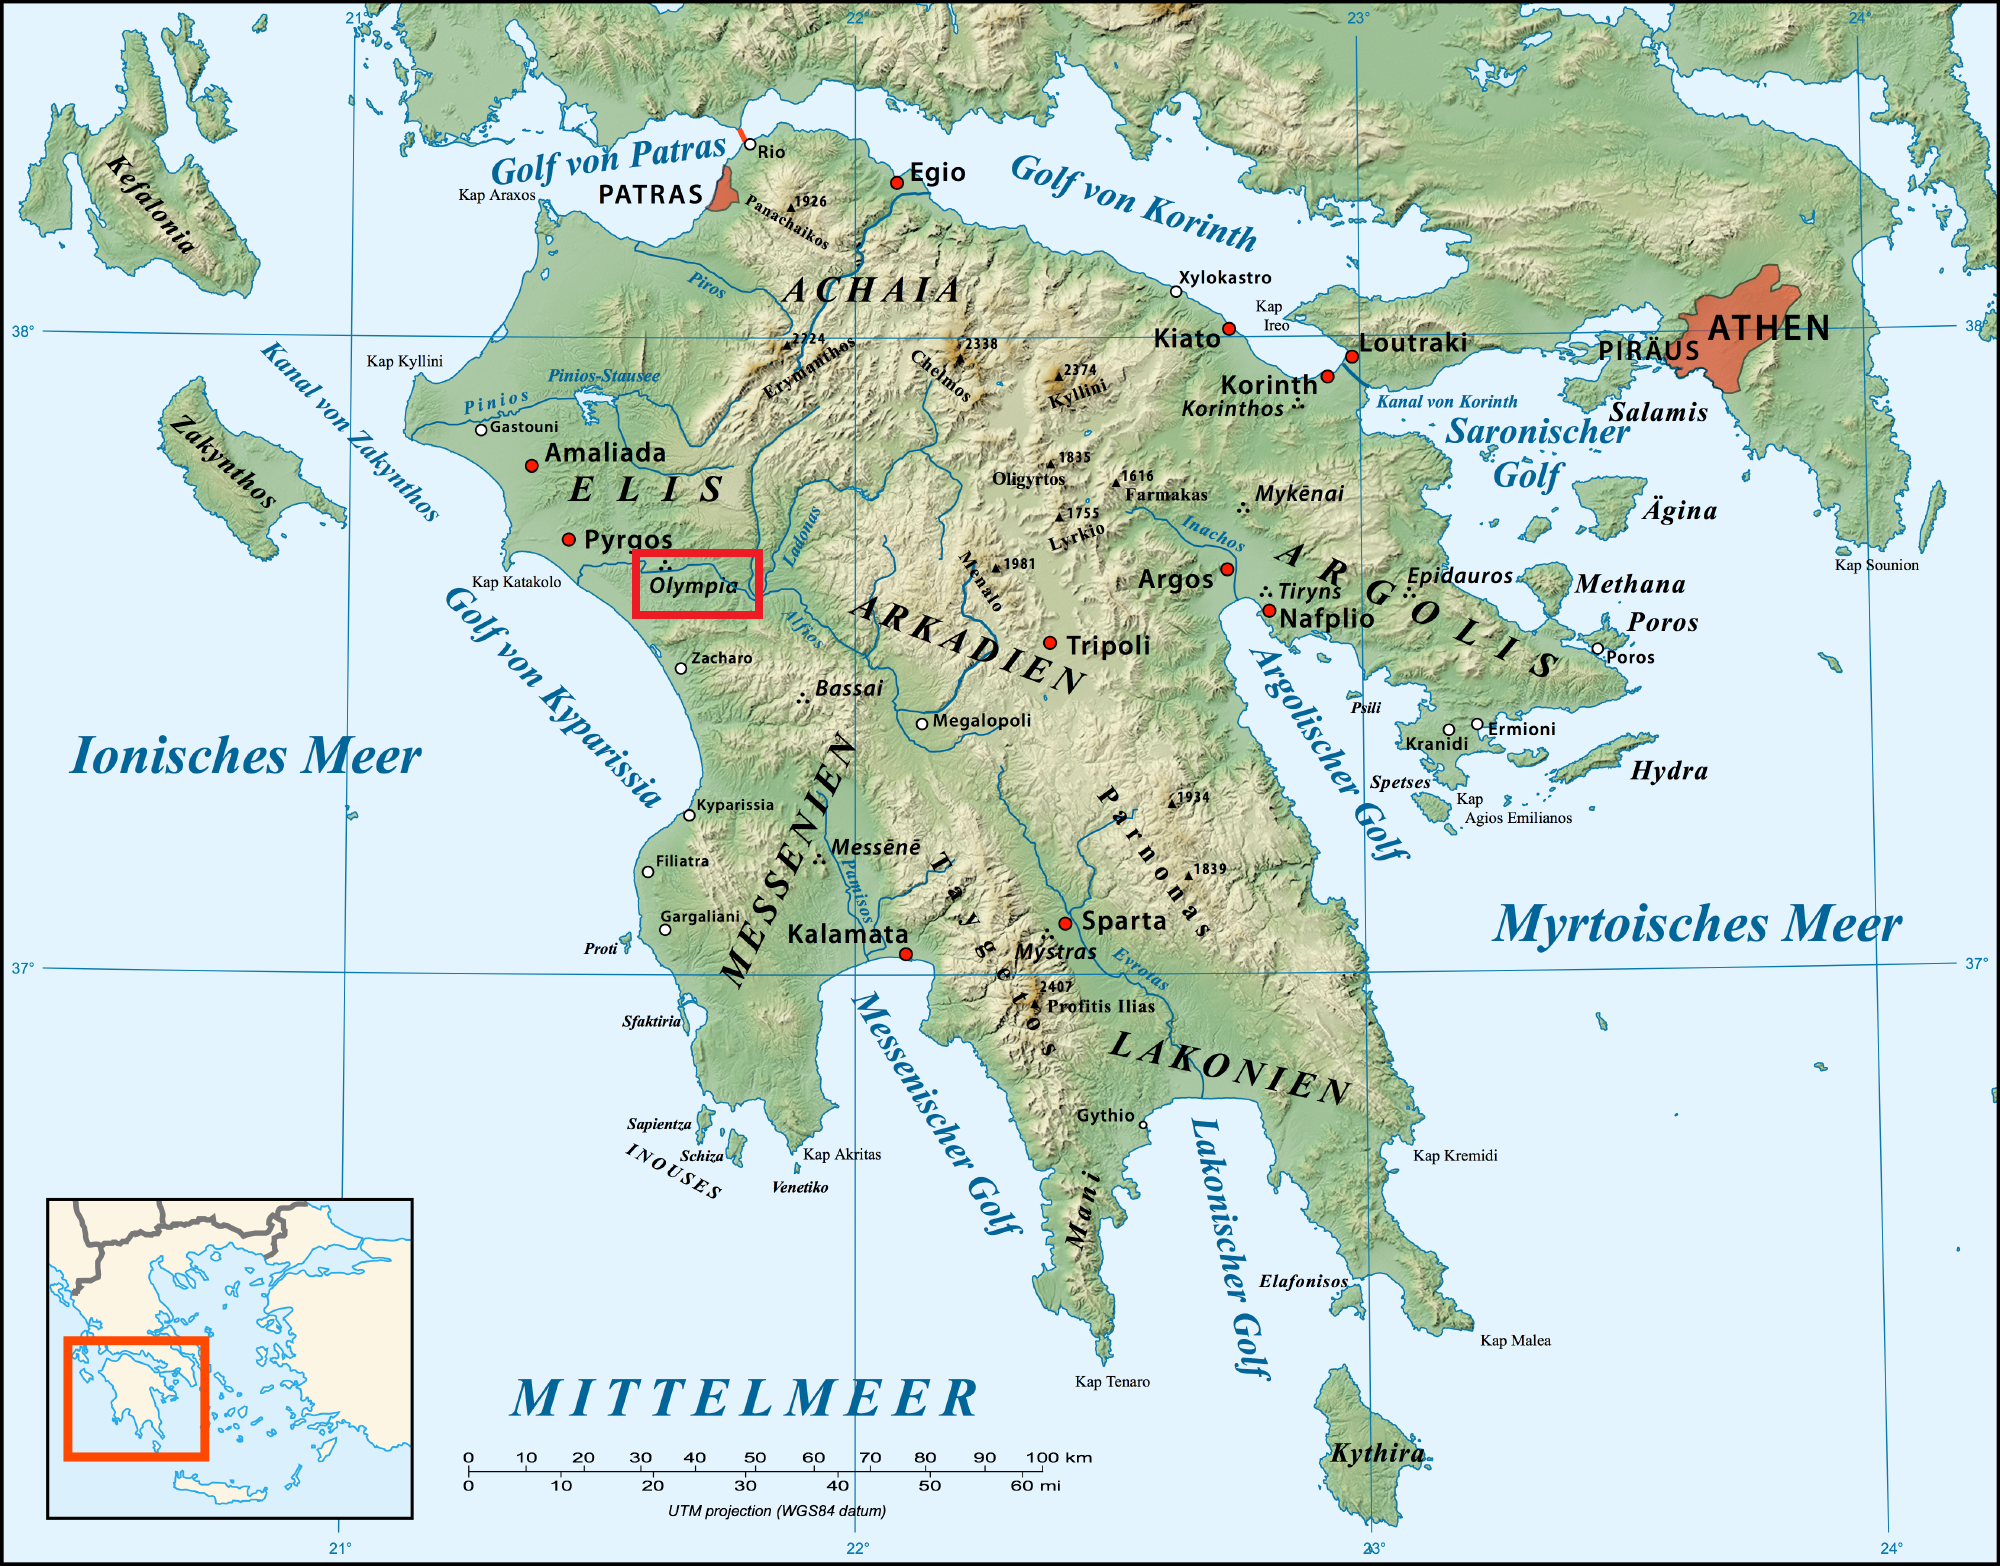 Peloponnese_relief_map-de_m_markierung.png